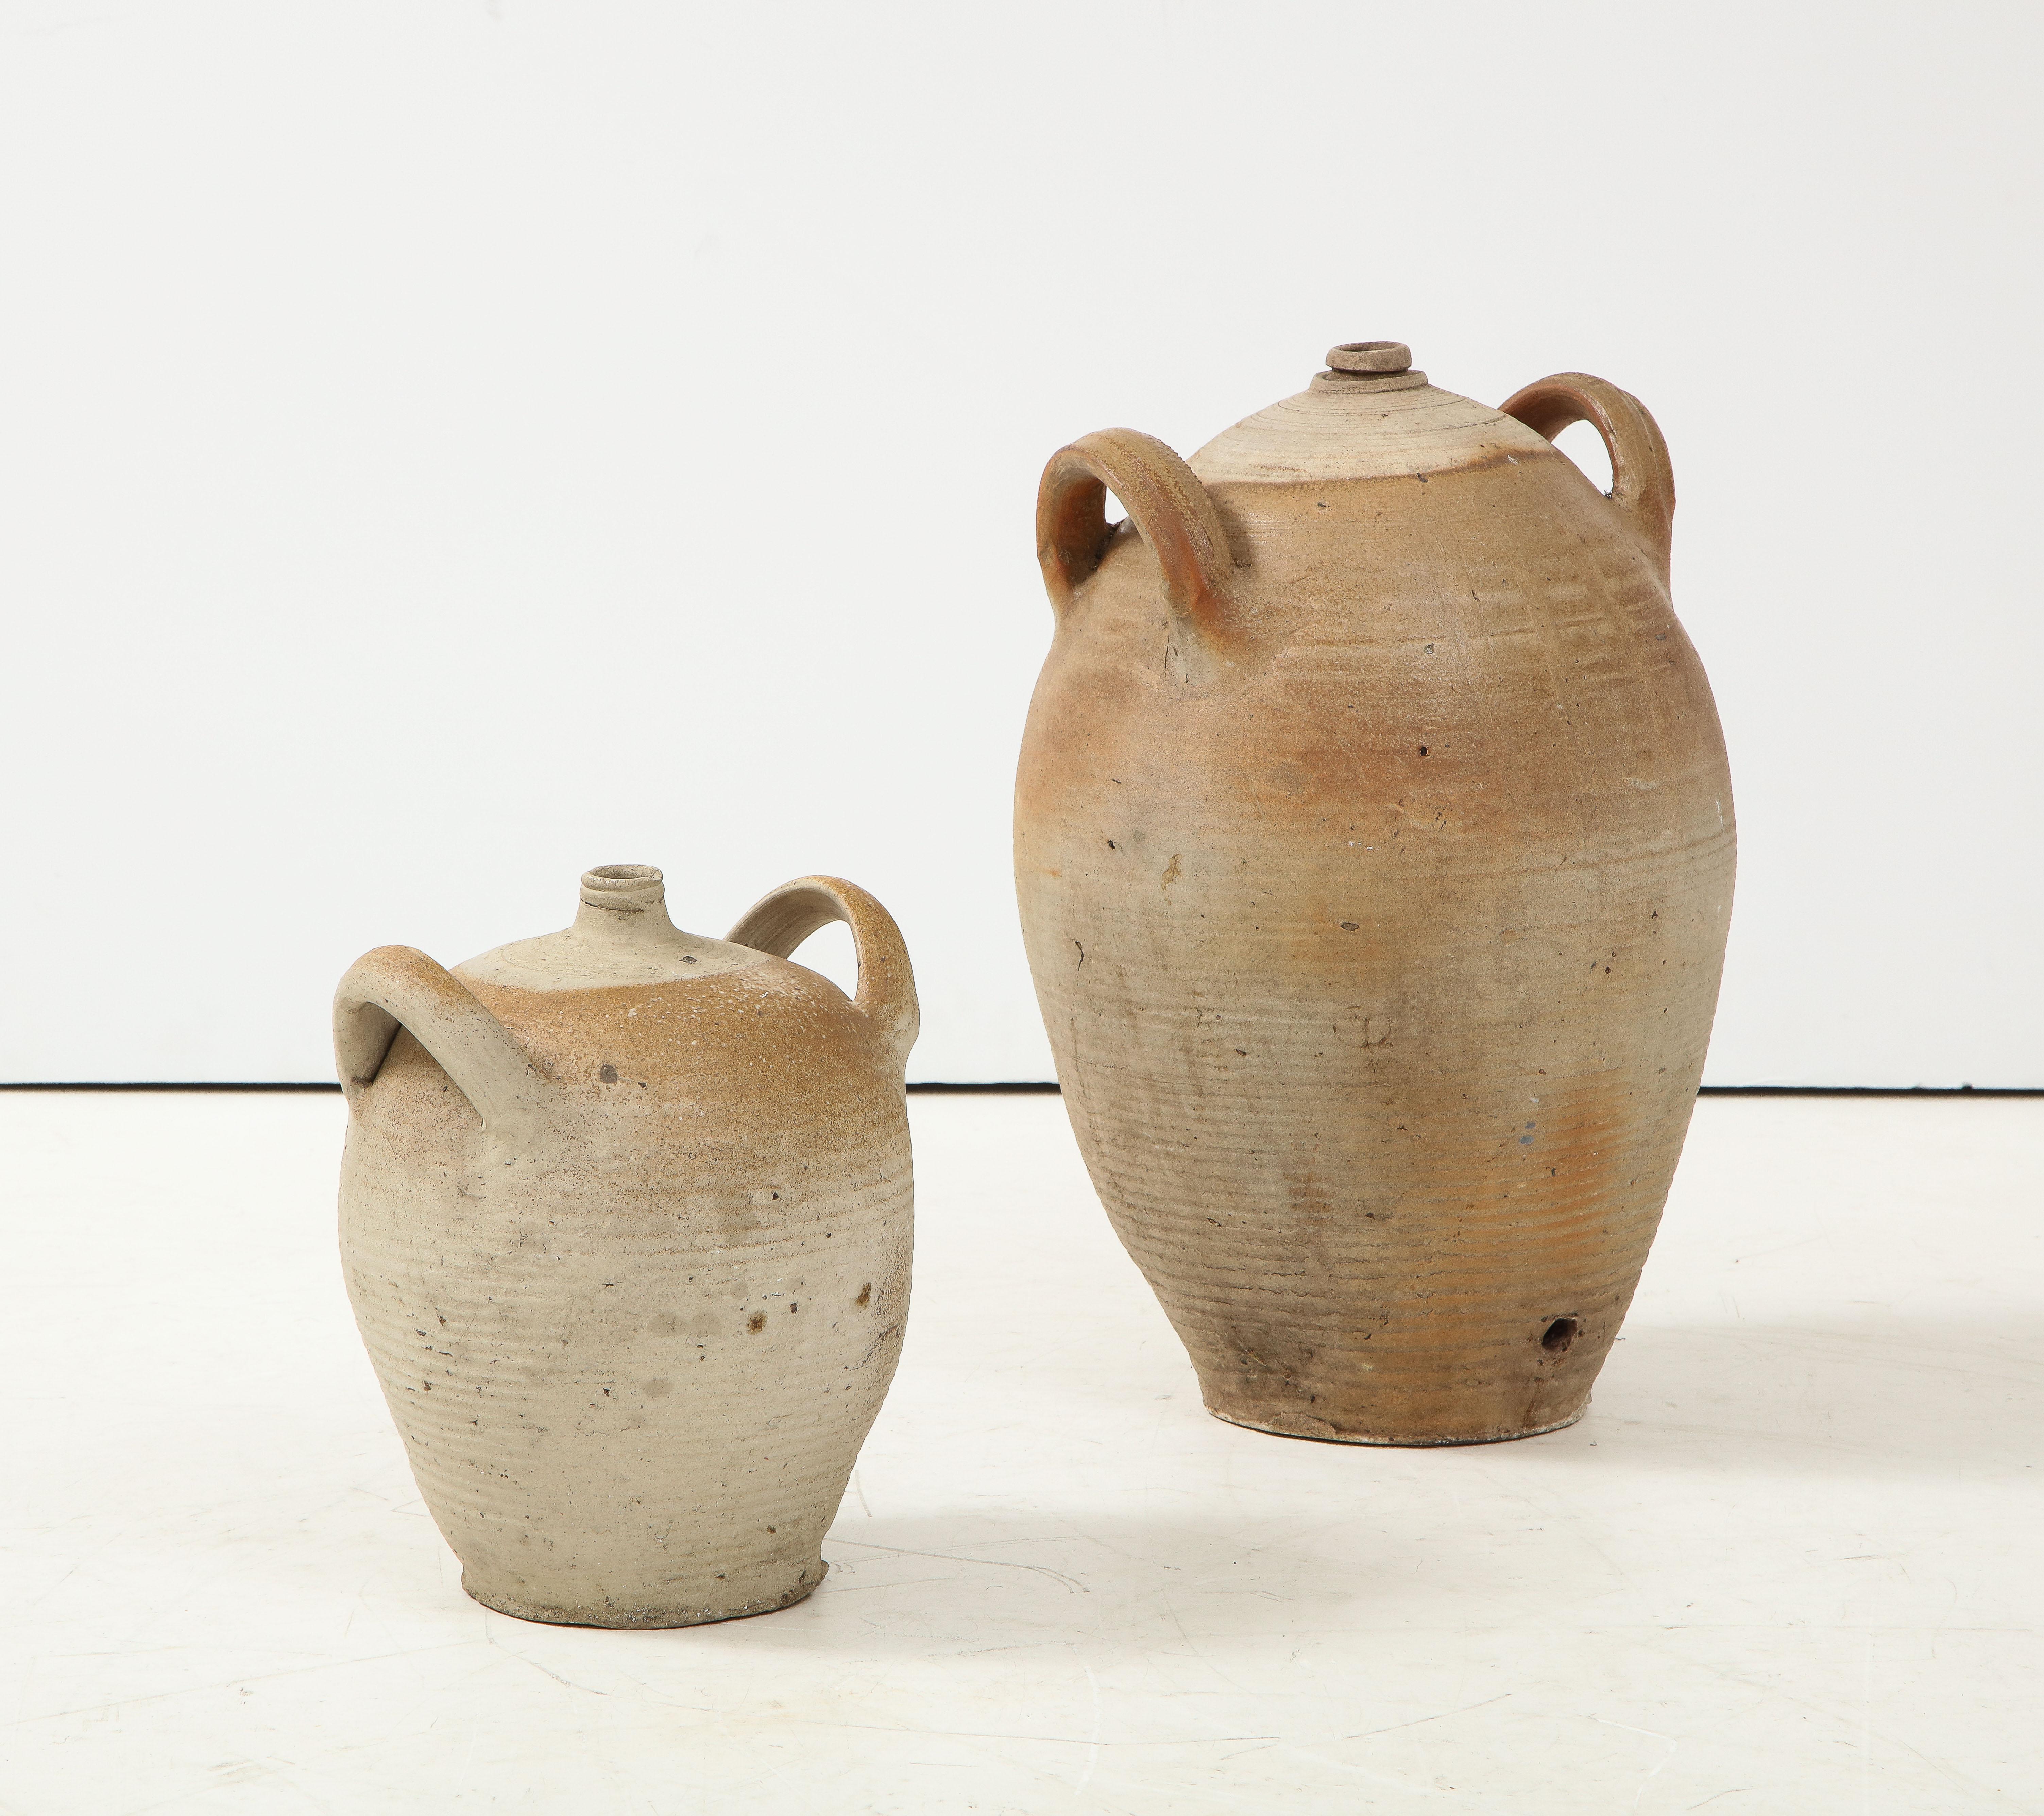 French Provincial Stoneware Vintage Pottery Oil Jar, Jug, Vase or Vessel 1